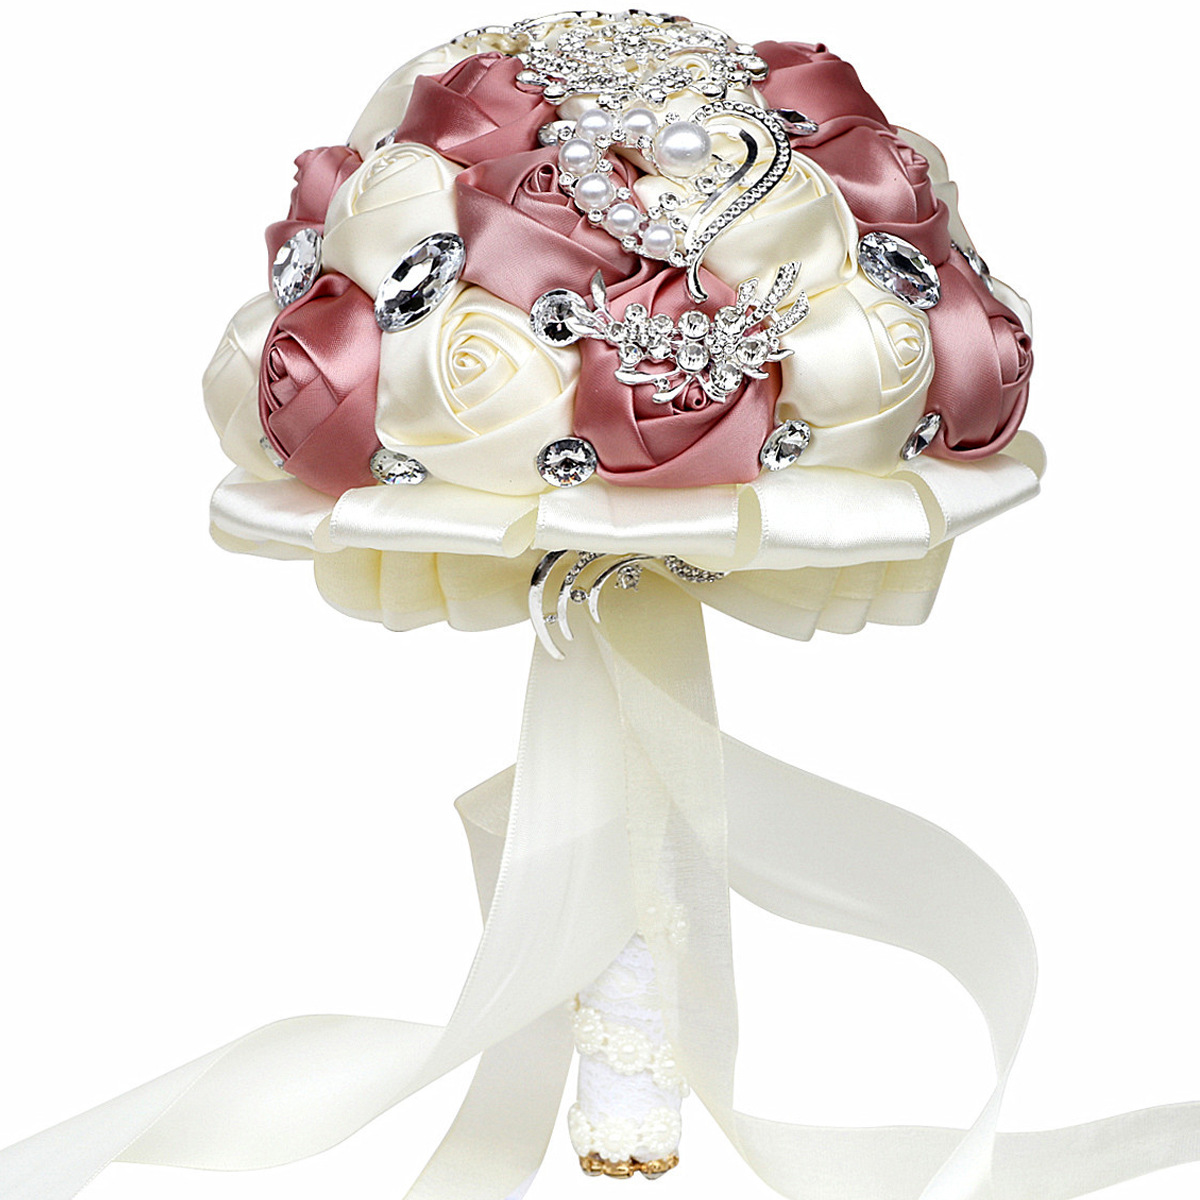 Op maat gemaakte satijnen roos bruiloft bloemen bruidsboeket kristal kralen glanzend roze ivoor wit blauw rood mix kleur handgemaakte bloembenodigdheden